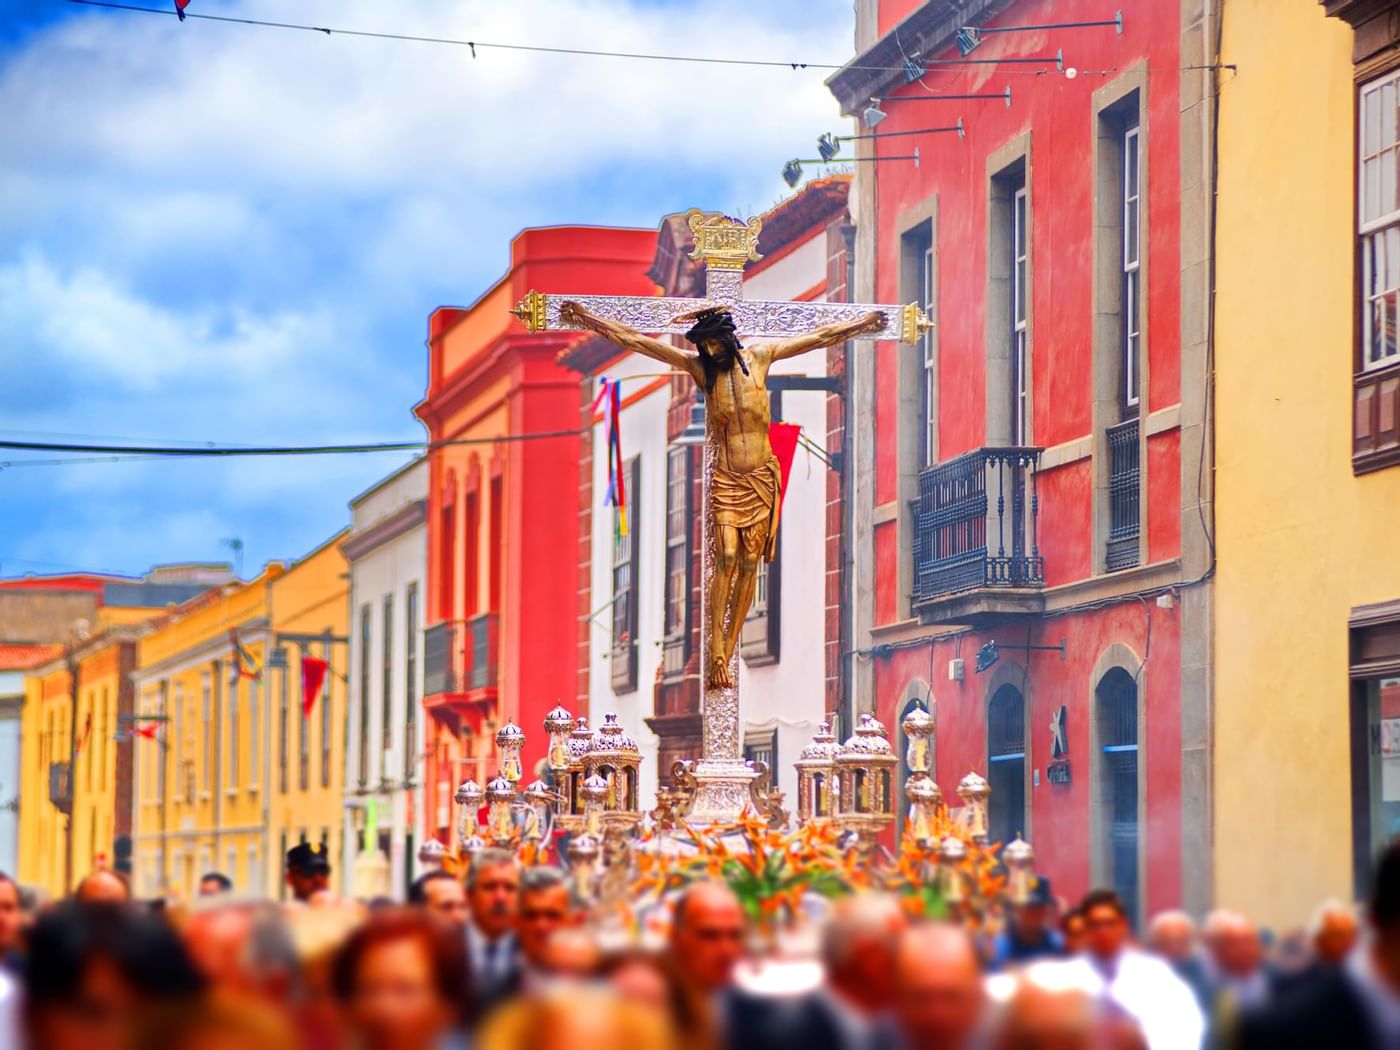 Portando una cruz en una procesión cerca de Grand Fiesta Americana